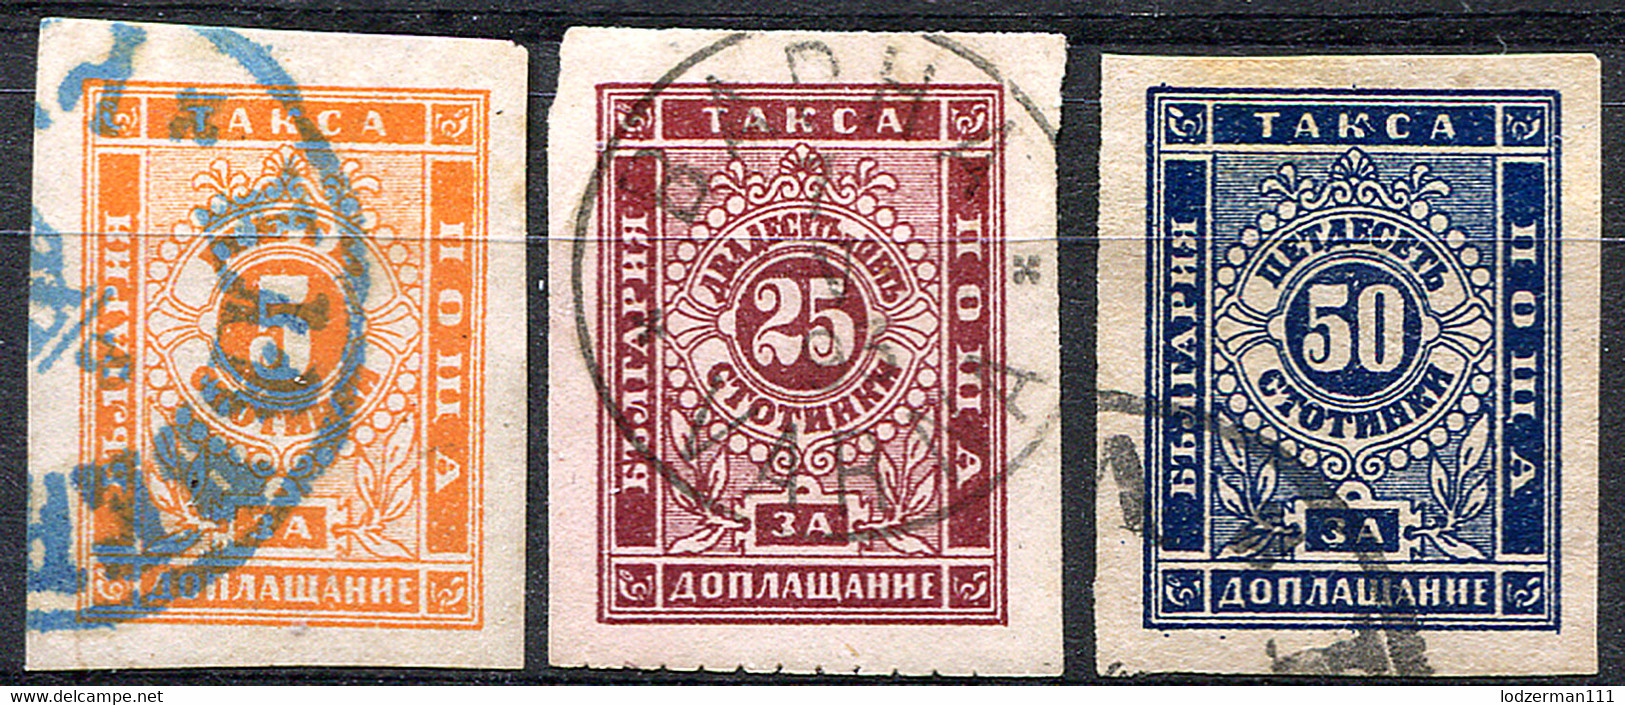 BULGARIA 1885-86 - Yv.Taxe 4-6 (Mi.Porto 4x-6x, Sc.J4-6) Used (perfect) VF - Postage Due